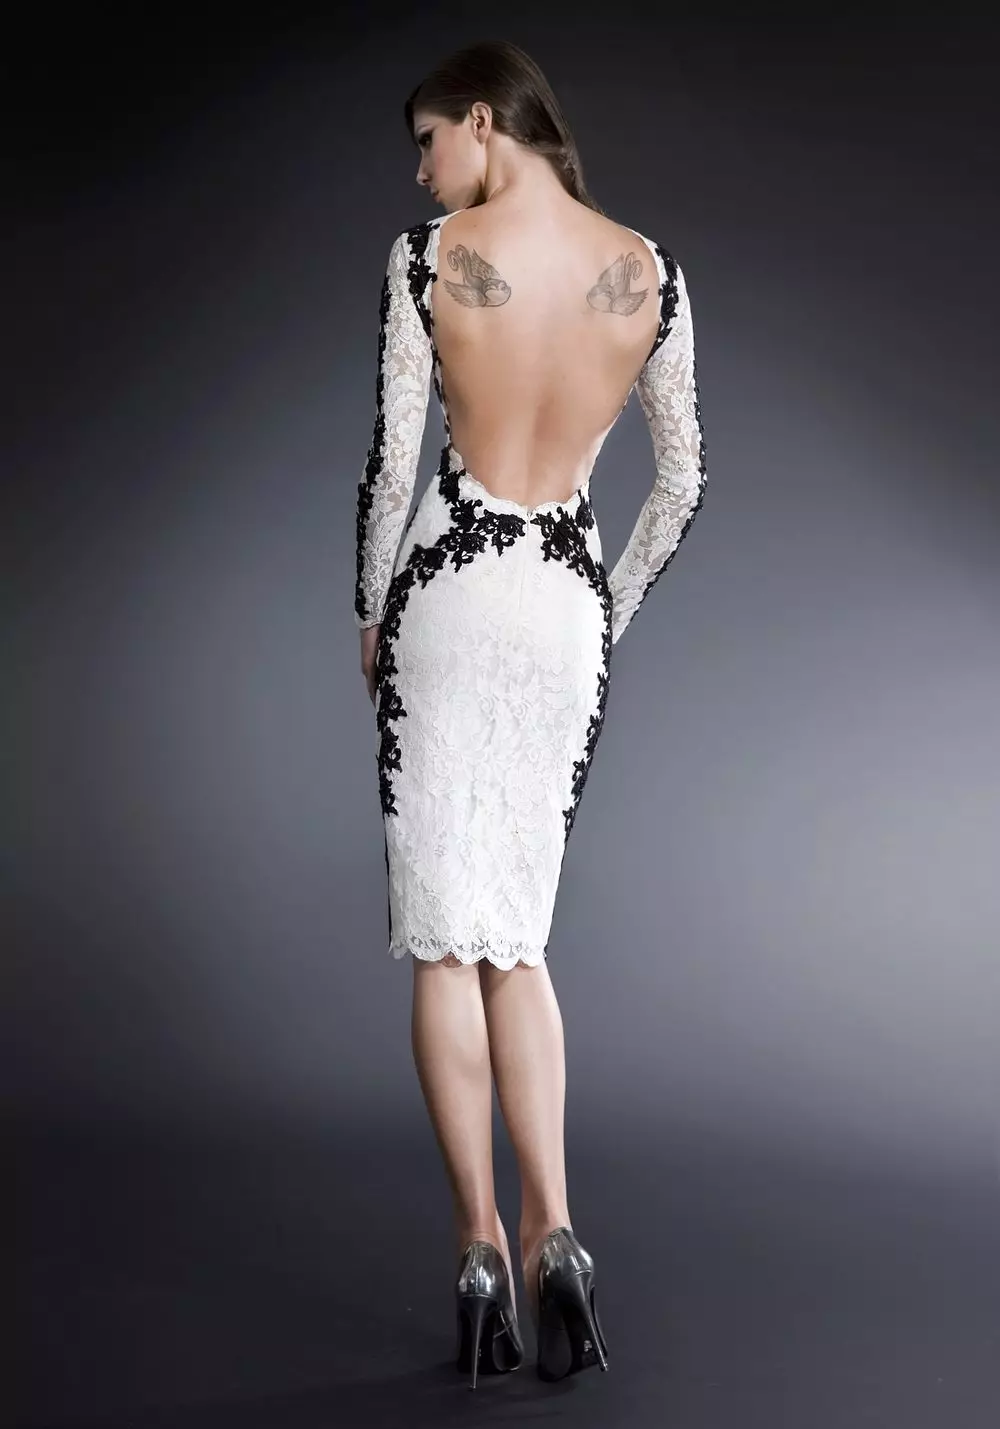 Kratka haljina sa dubokim dekolteom na leđima